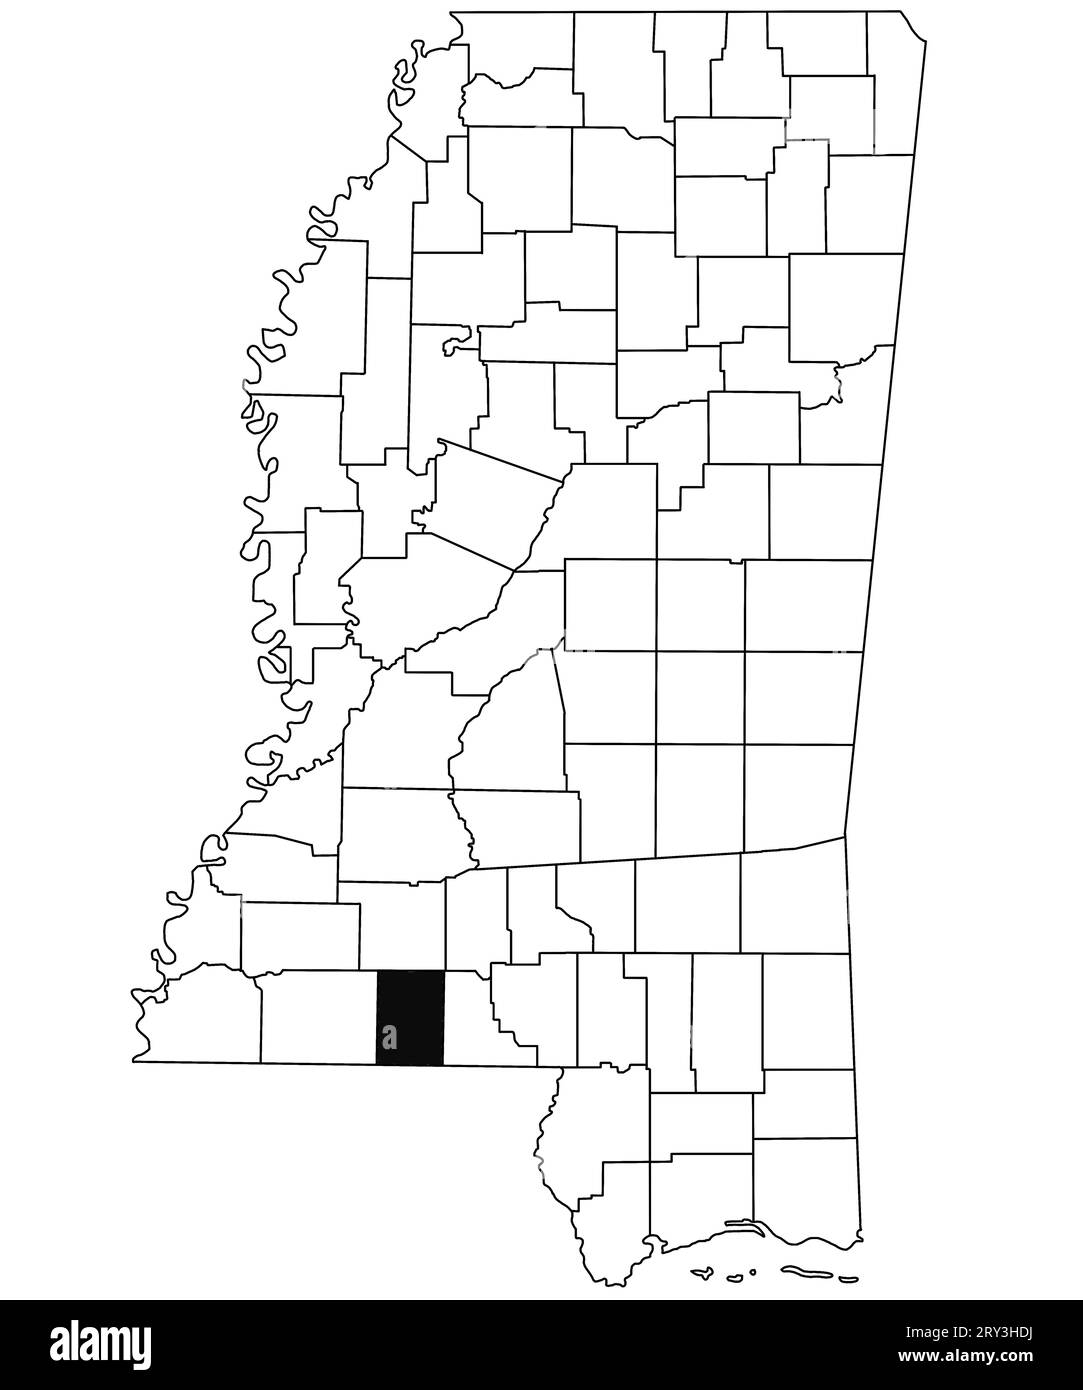 Mappa della contea di Pike nello stato del Mississippi su sfondo bianco. Mappa singola della contea evidenziata in nero sulla mappa del Mississippi. Stati Uniti d'America Foto Stock